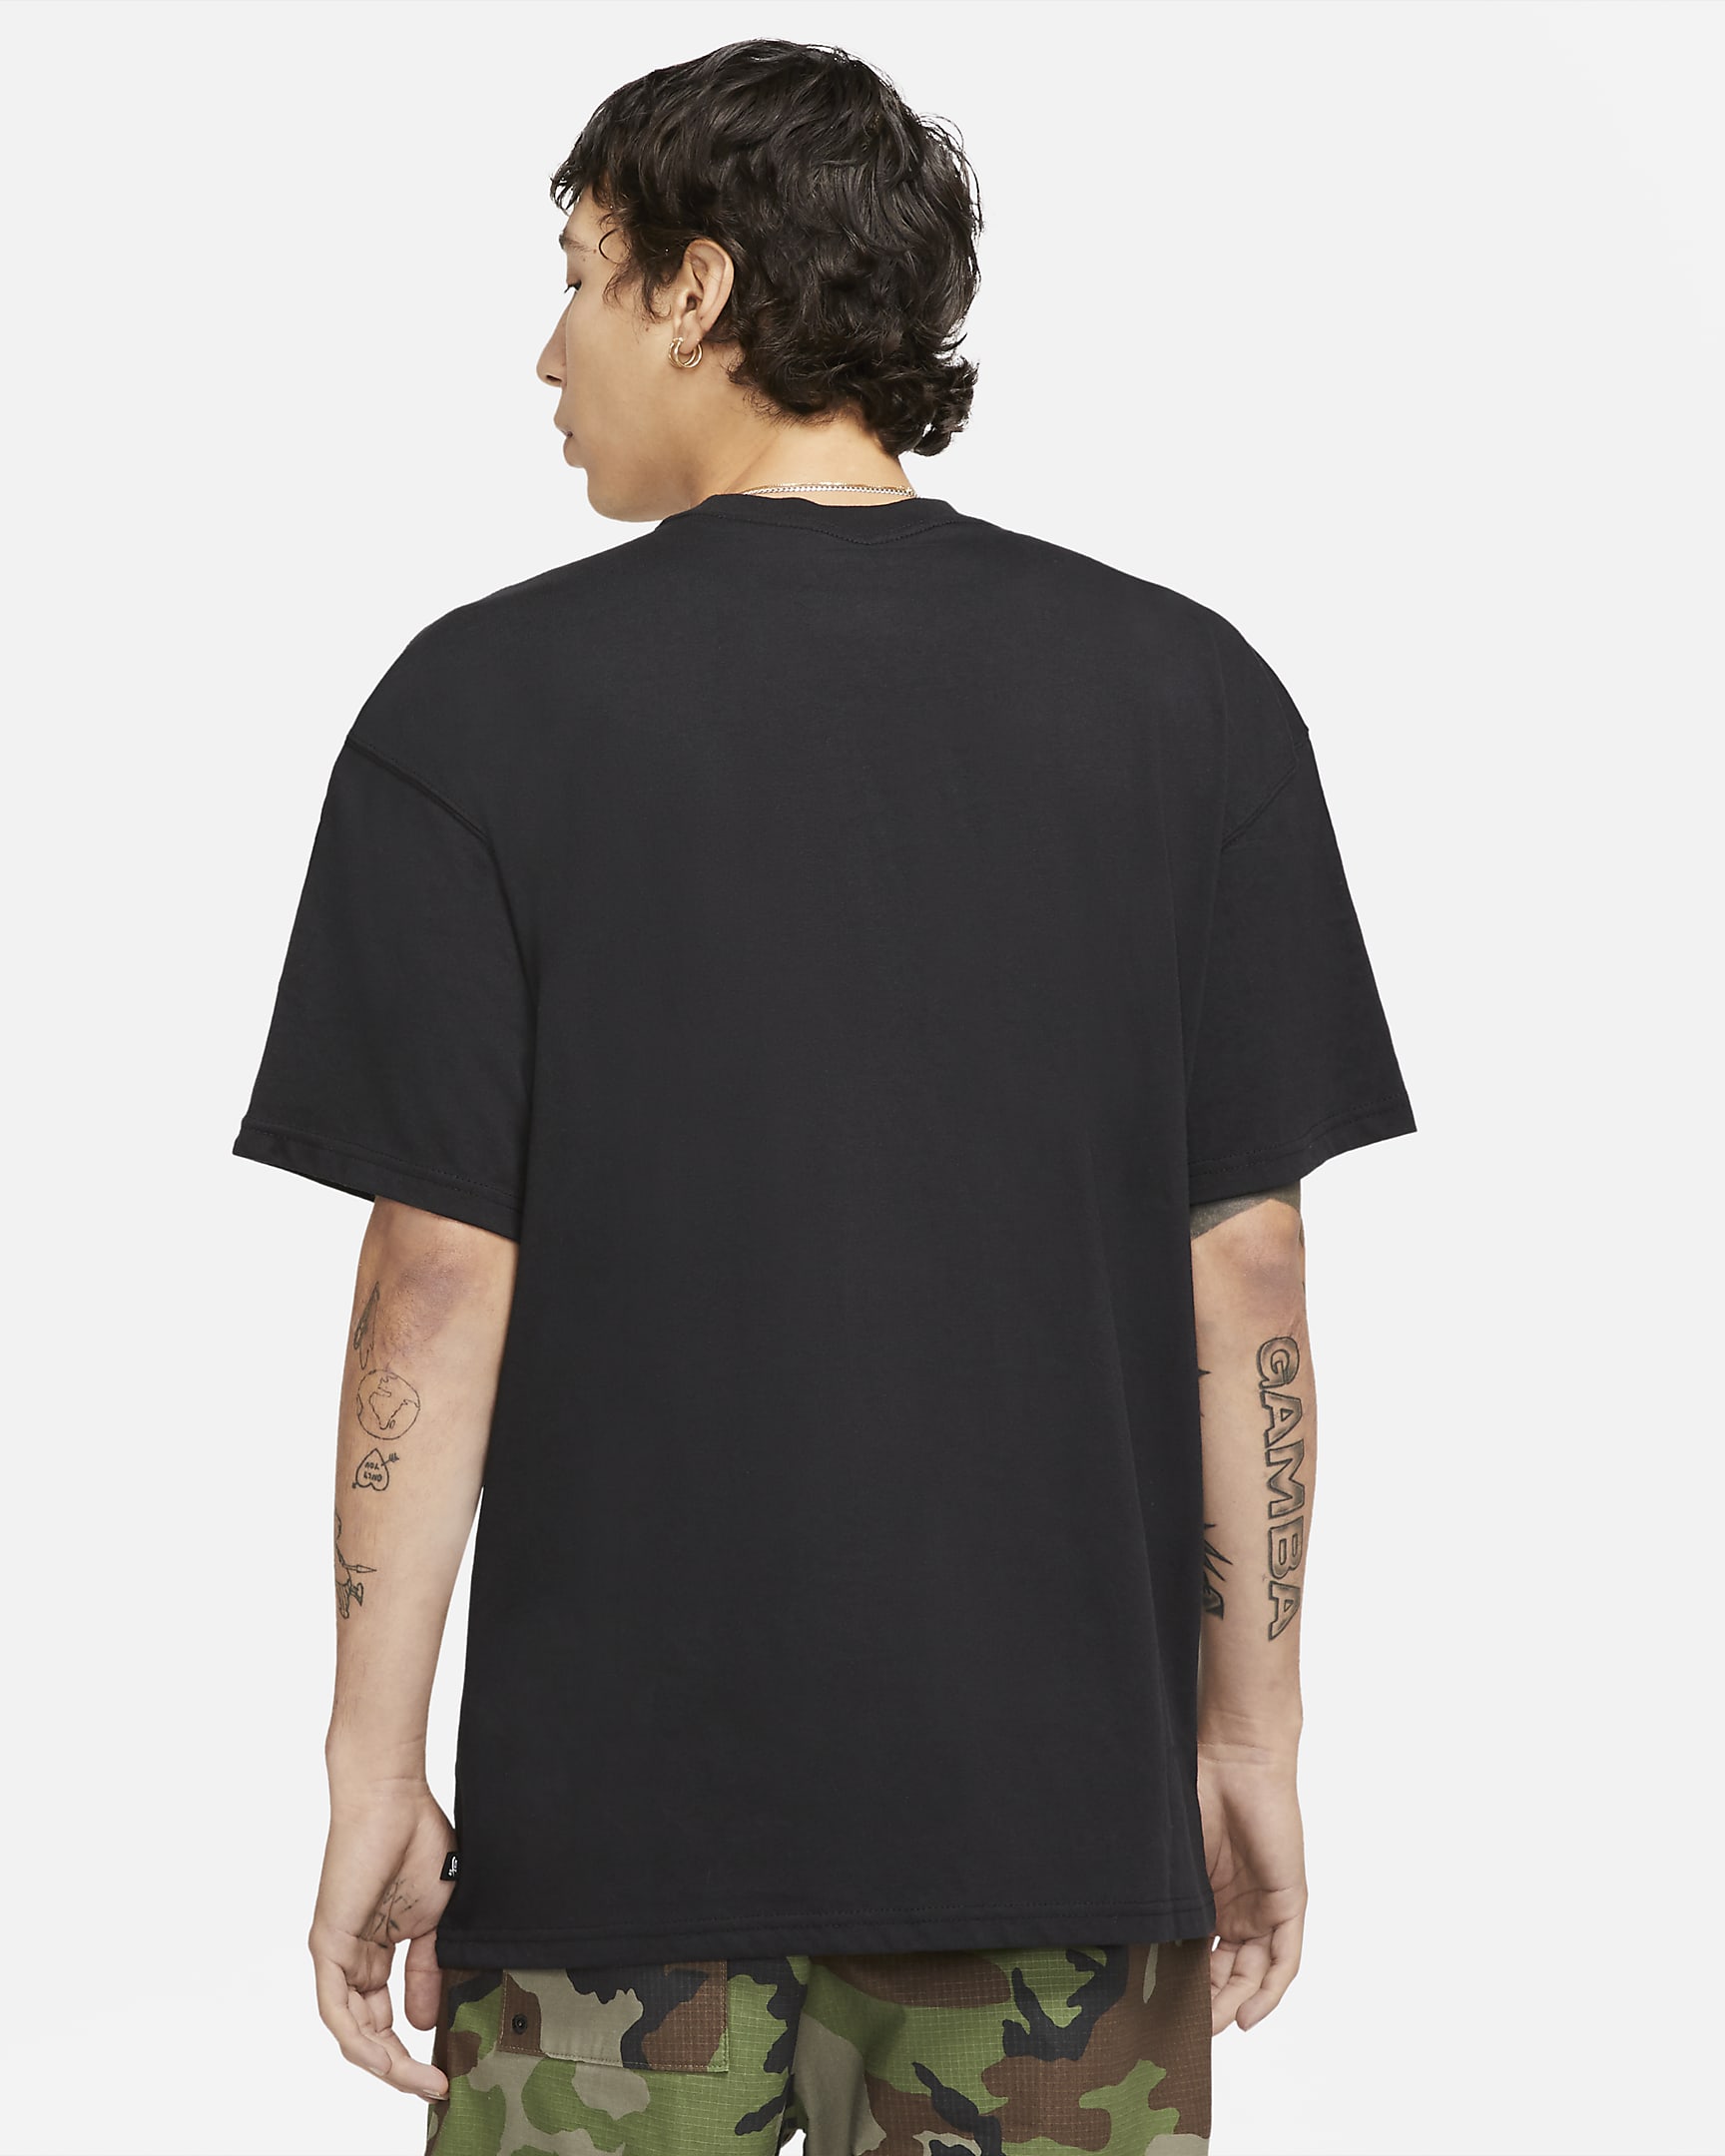 Nike SB Logo Skate T-Shirt - Black/White